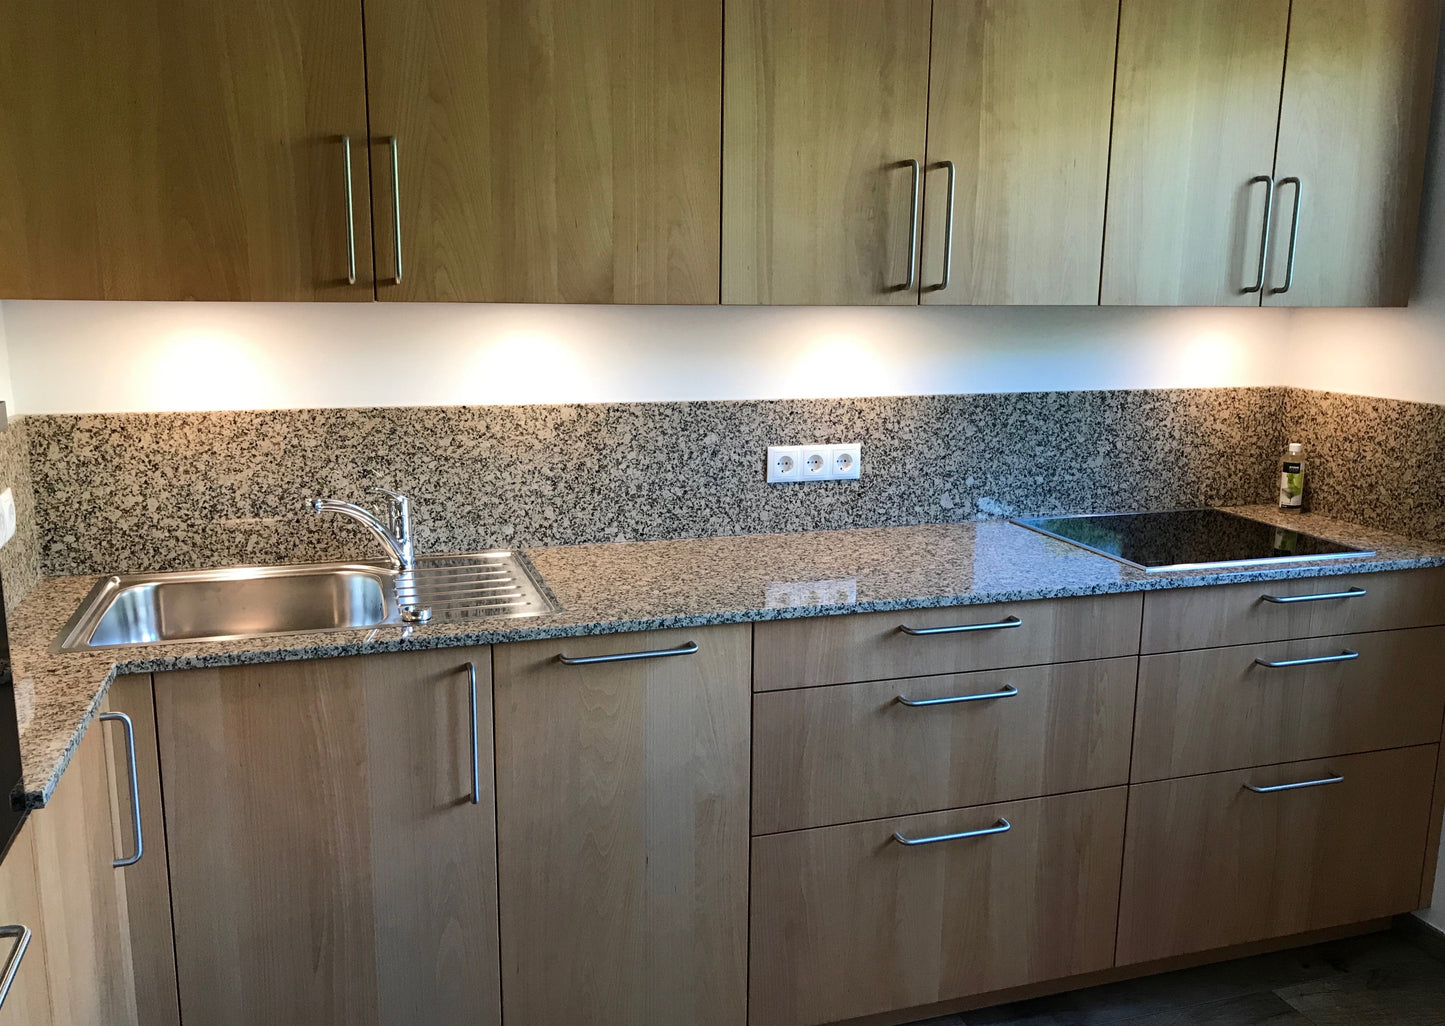 Küchenansicht massiv Buche geölt mit Granit Arbeitsplatte und Auflagespüle in Edelstahl, Kochfeld